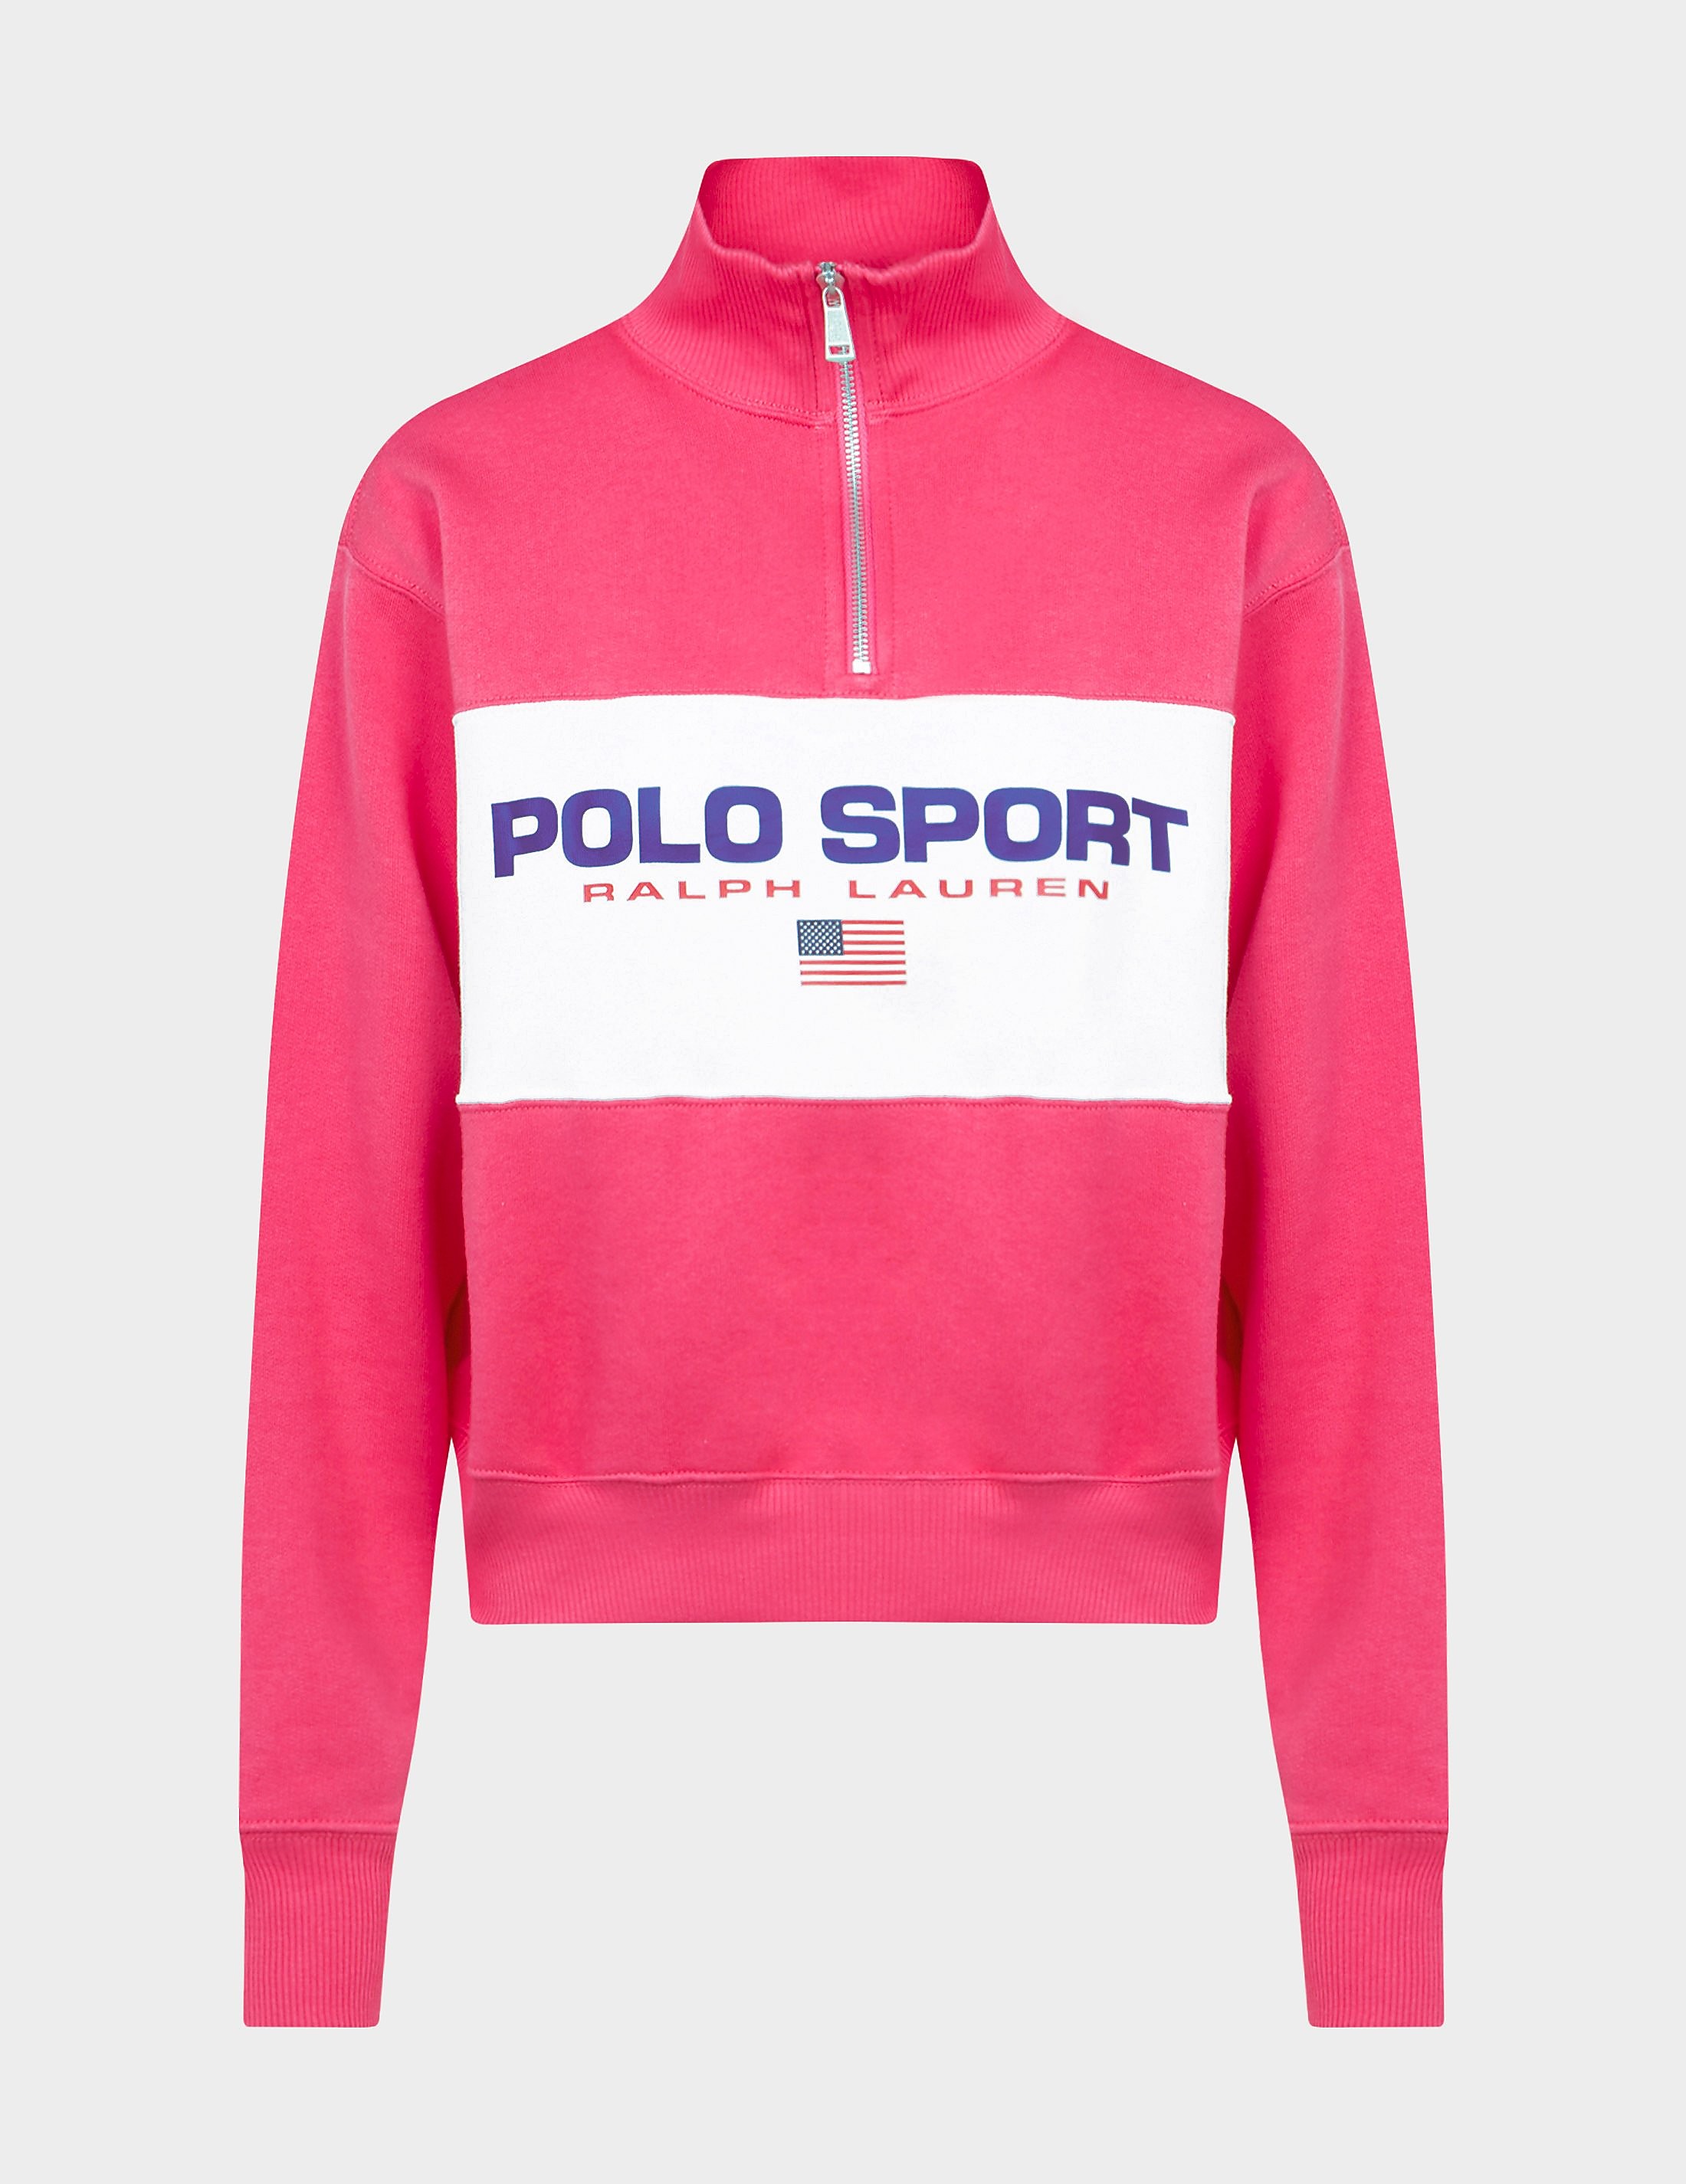 women's polo ralph lauren sport half zip sweatshirt pink, pink